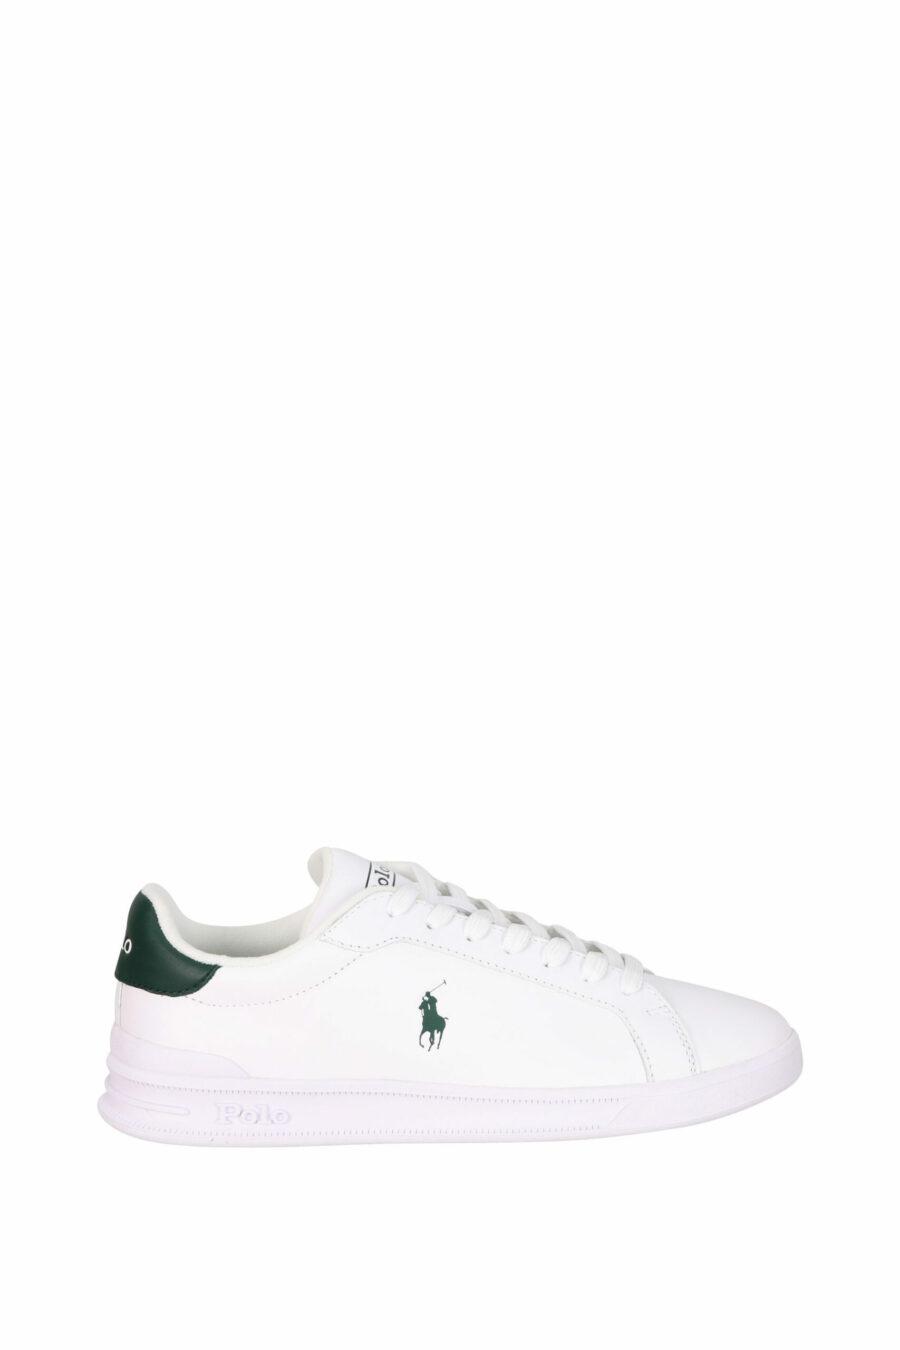 Zapatillas blancas con detalle verde y minilogo "polo" verde - 3616419508906 scaled